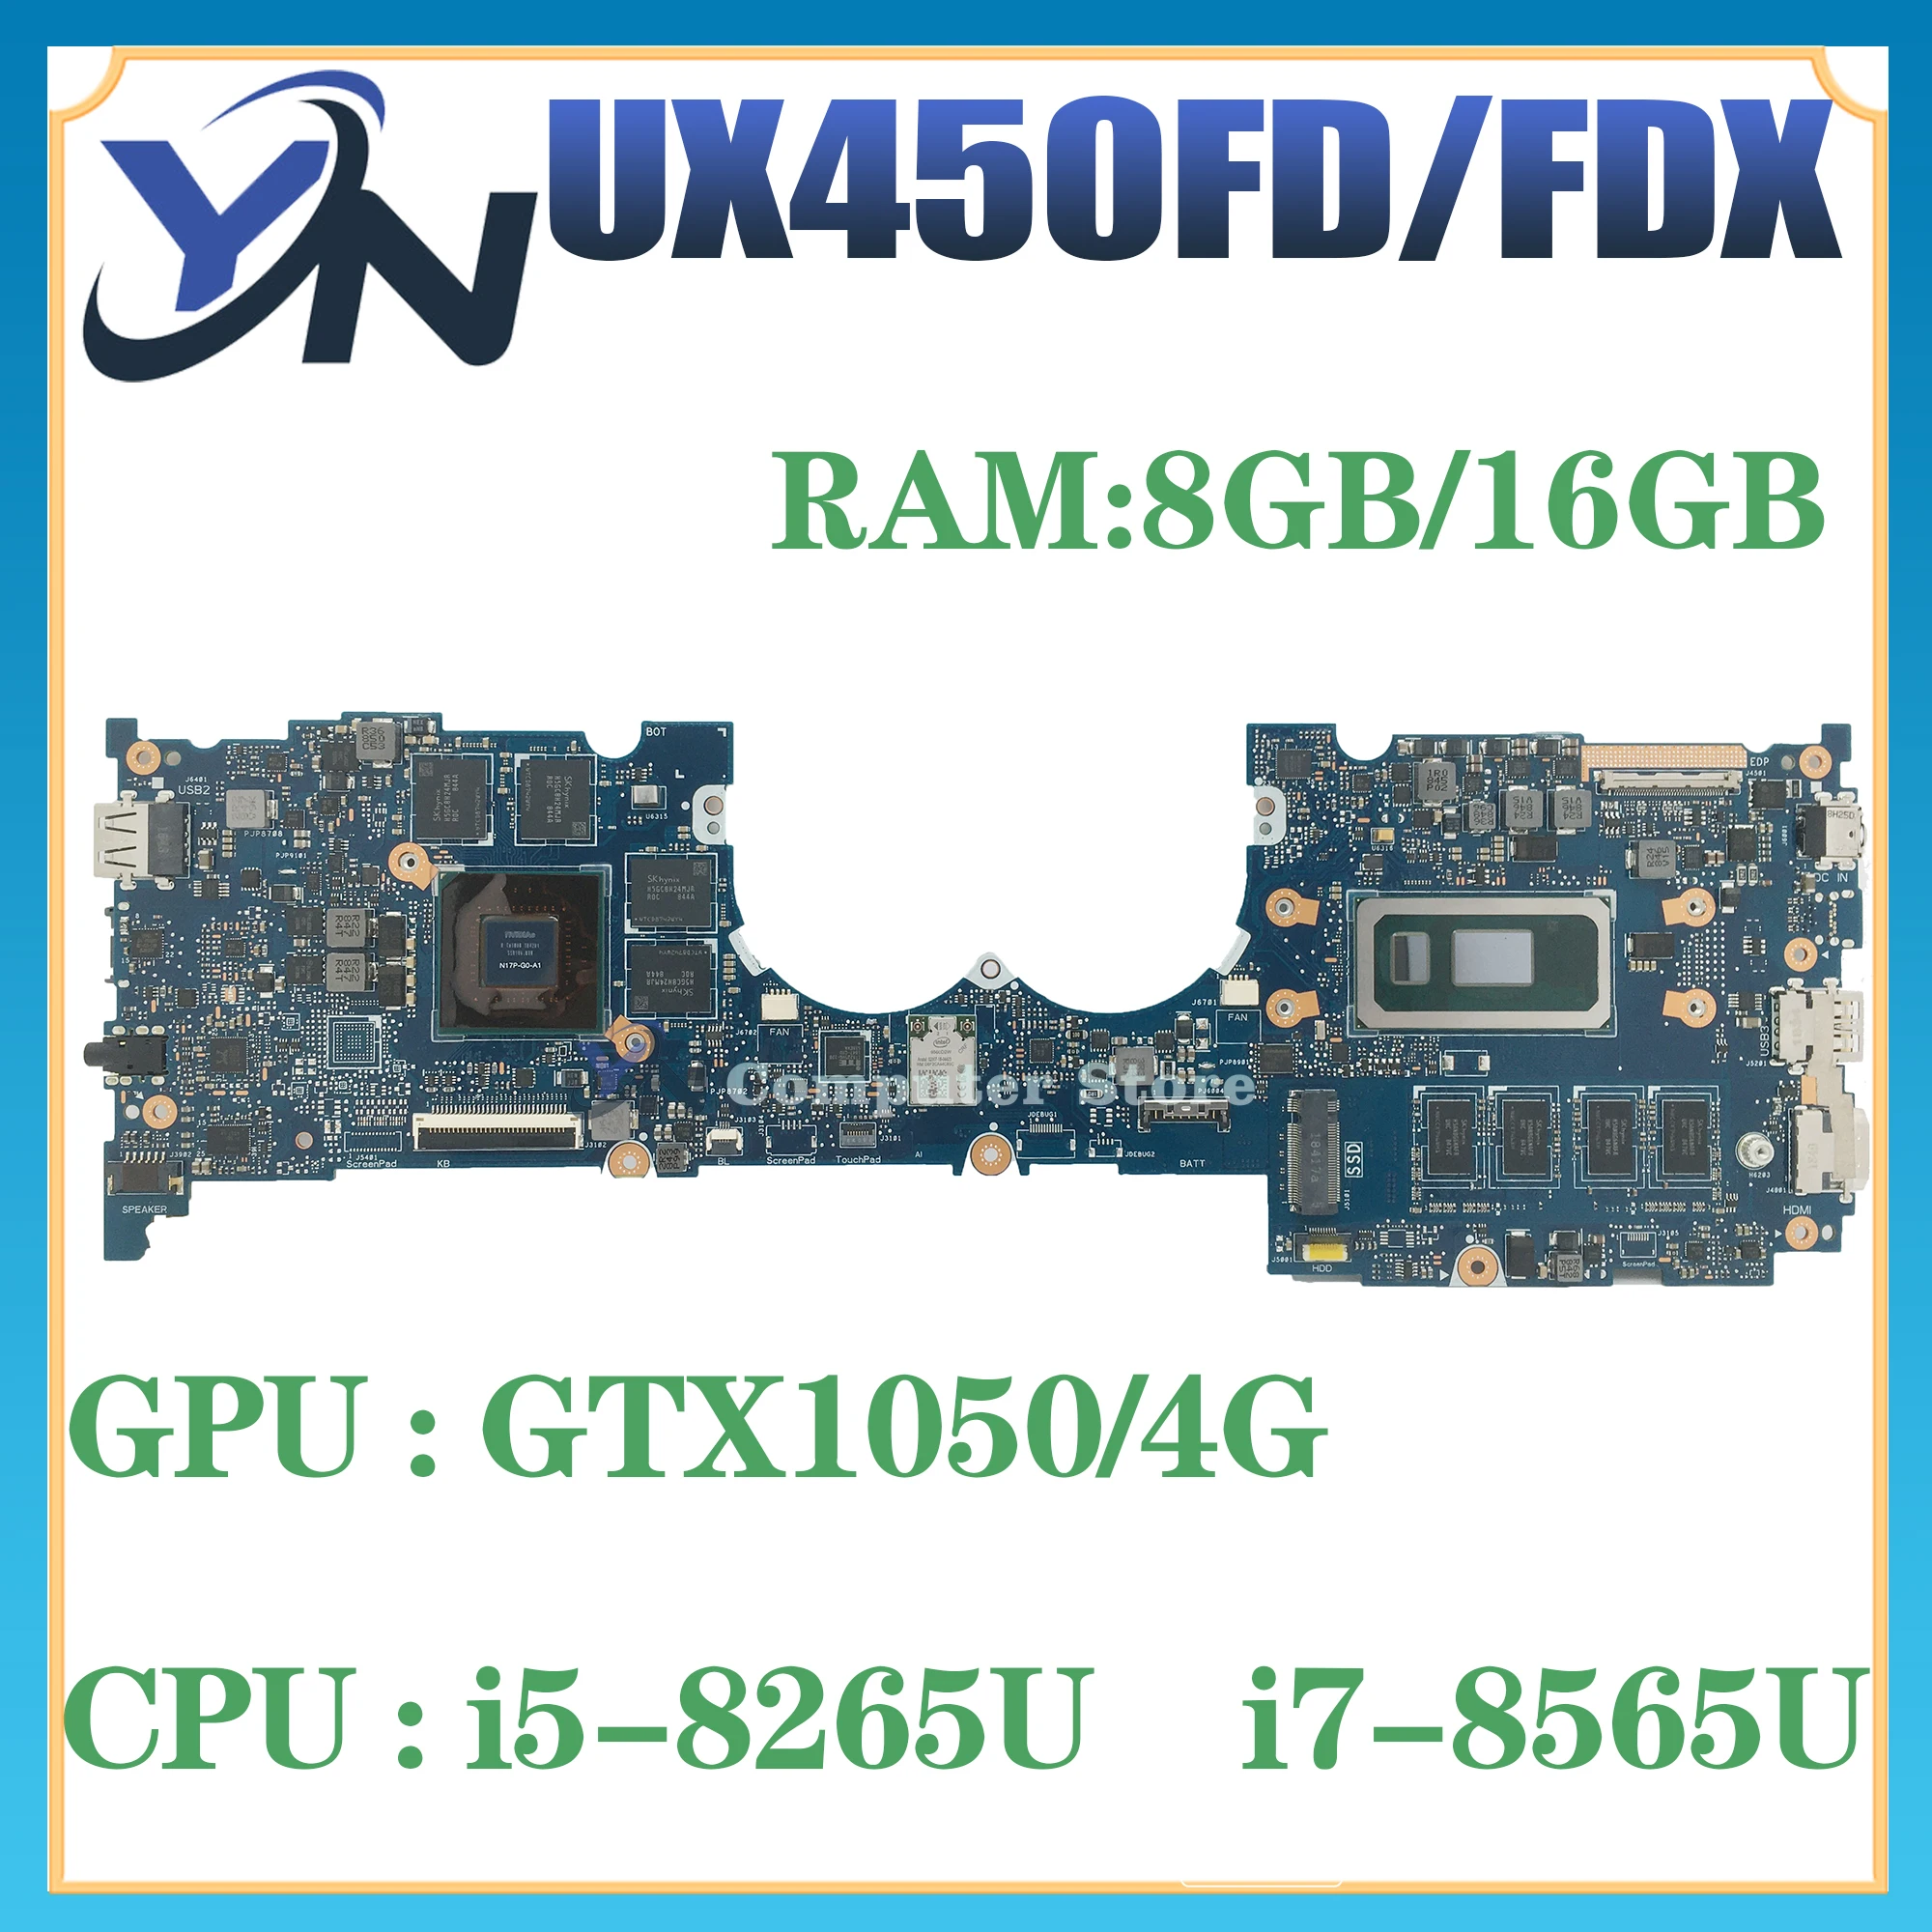 

UX450FDX Mainboard For ASUS Zenbook Pro 14 UX480 UX450FD UX450FDA UX450F Laptop Motherboard I5-8265U I7-8565U GTX1050 8G/16G-RAM